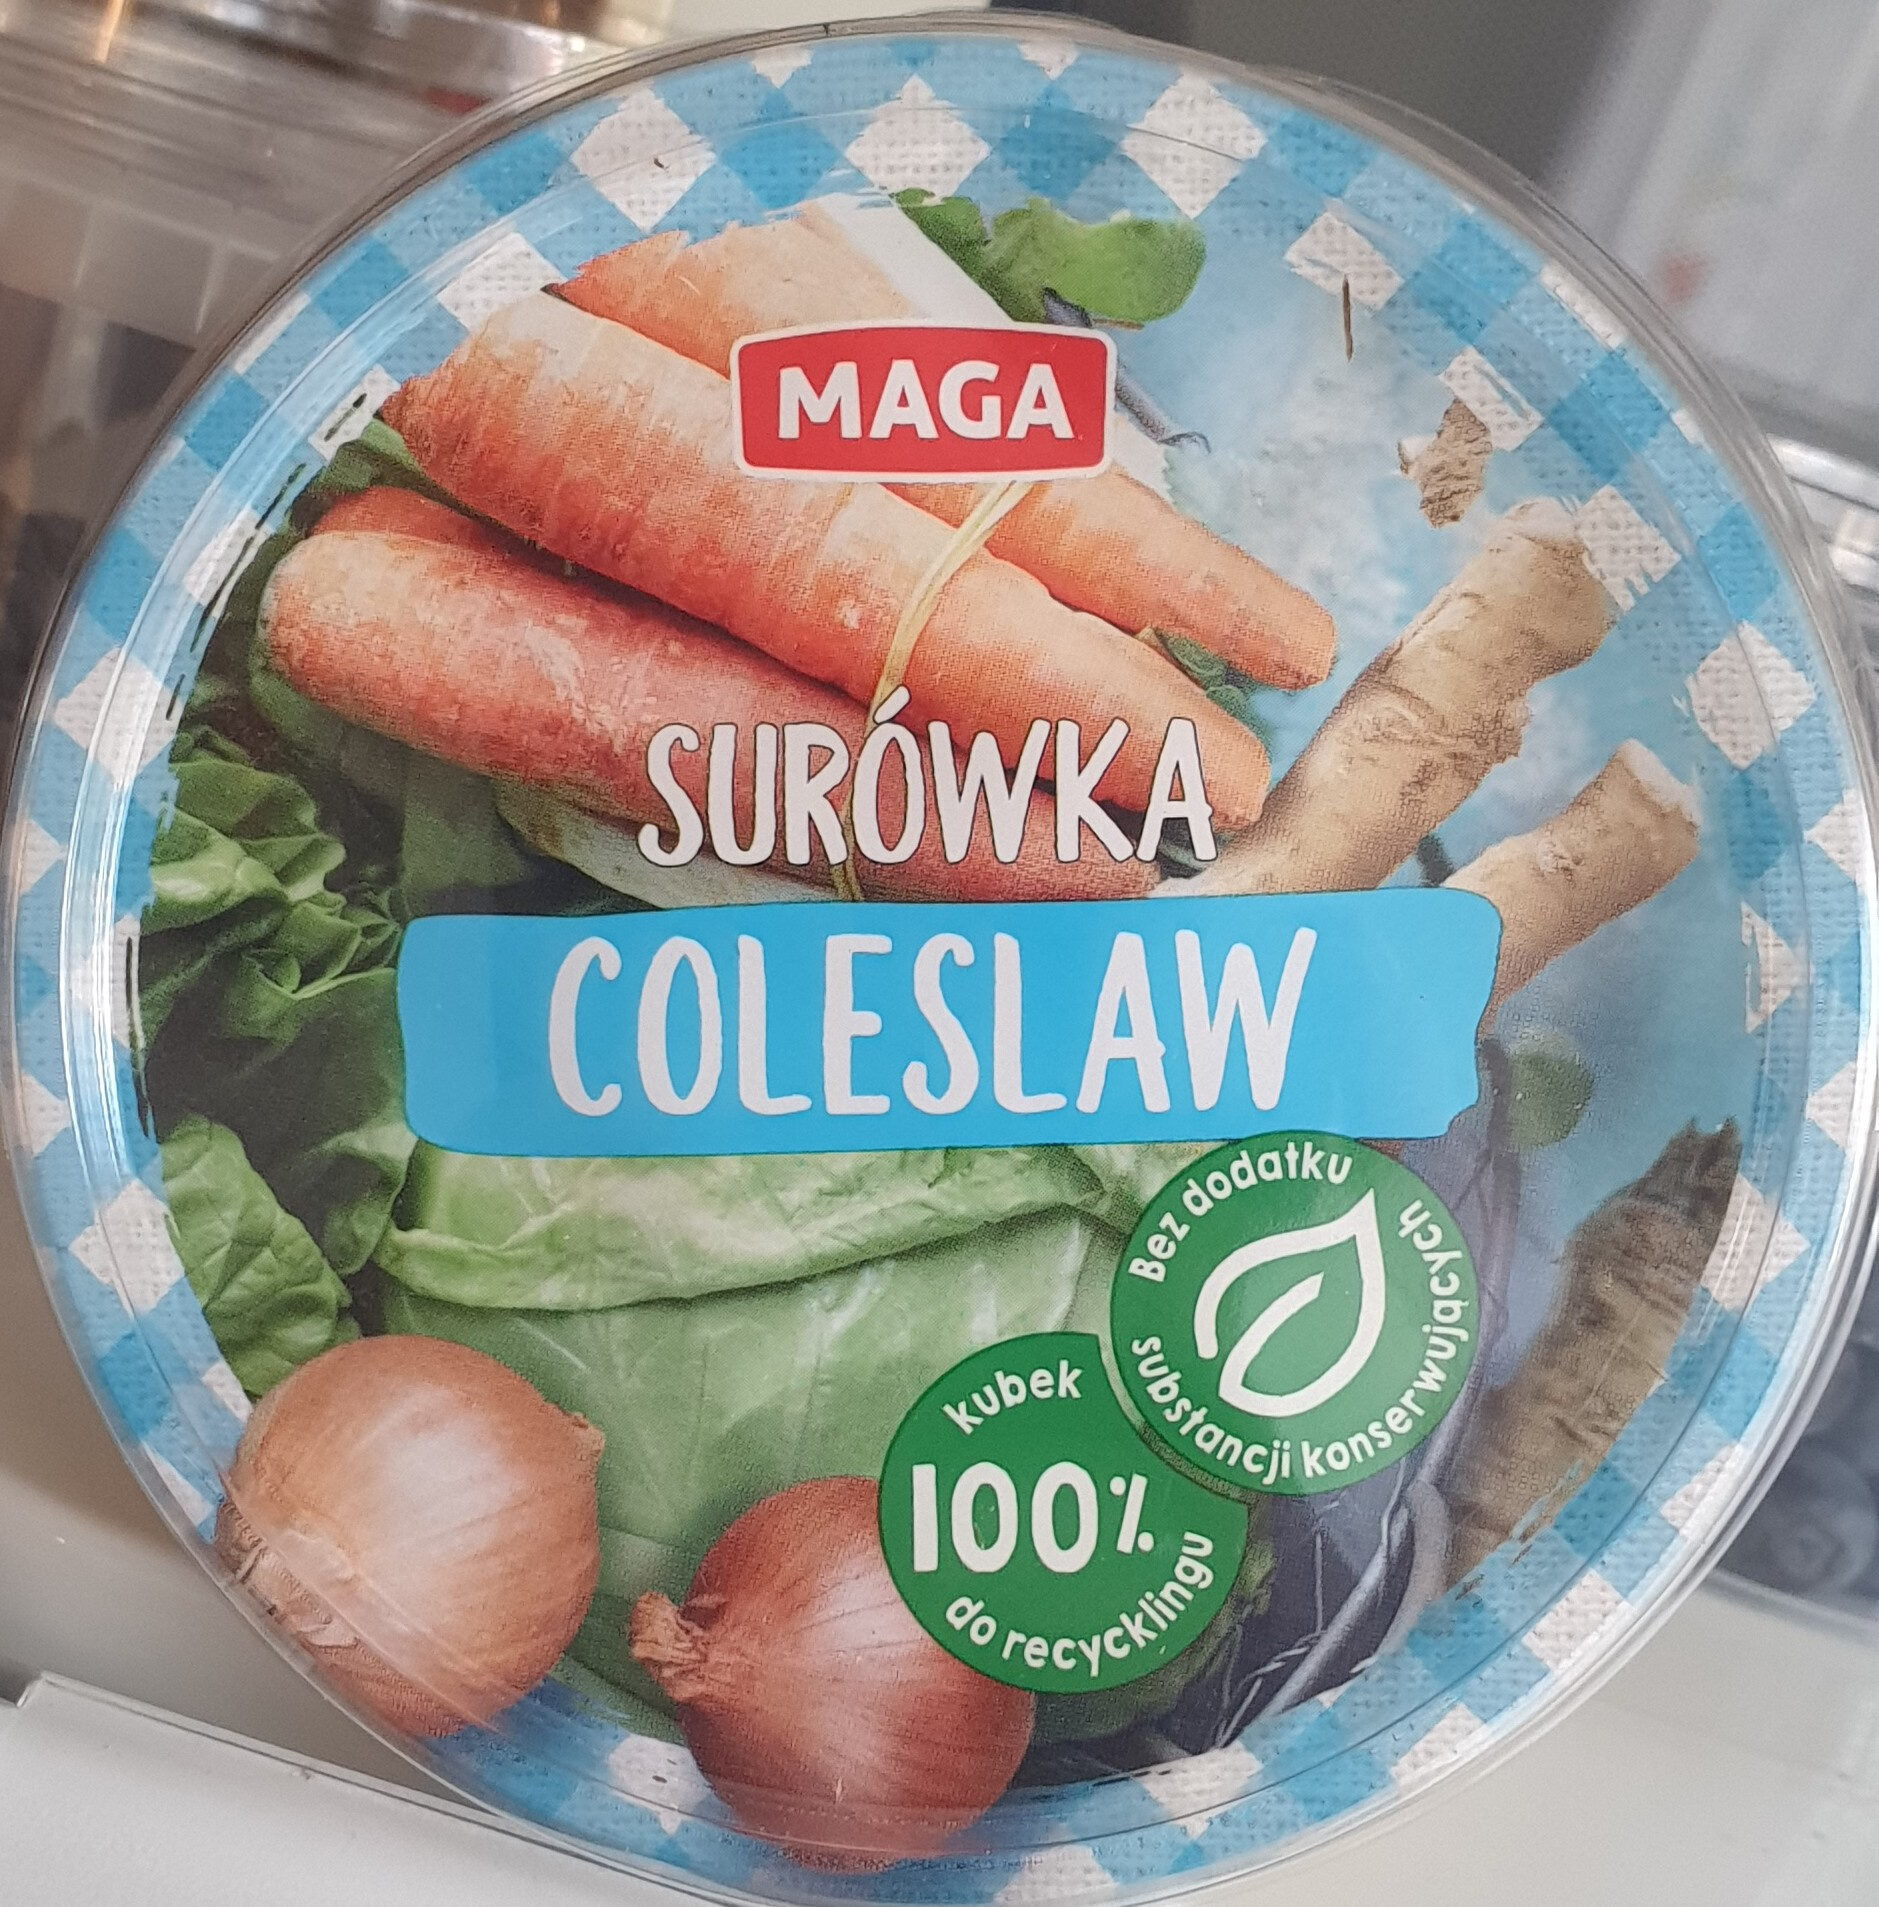 Surówka Colesław - Product - pl